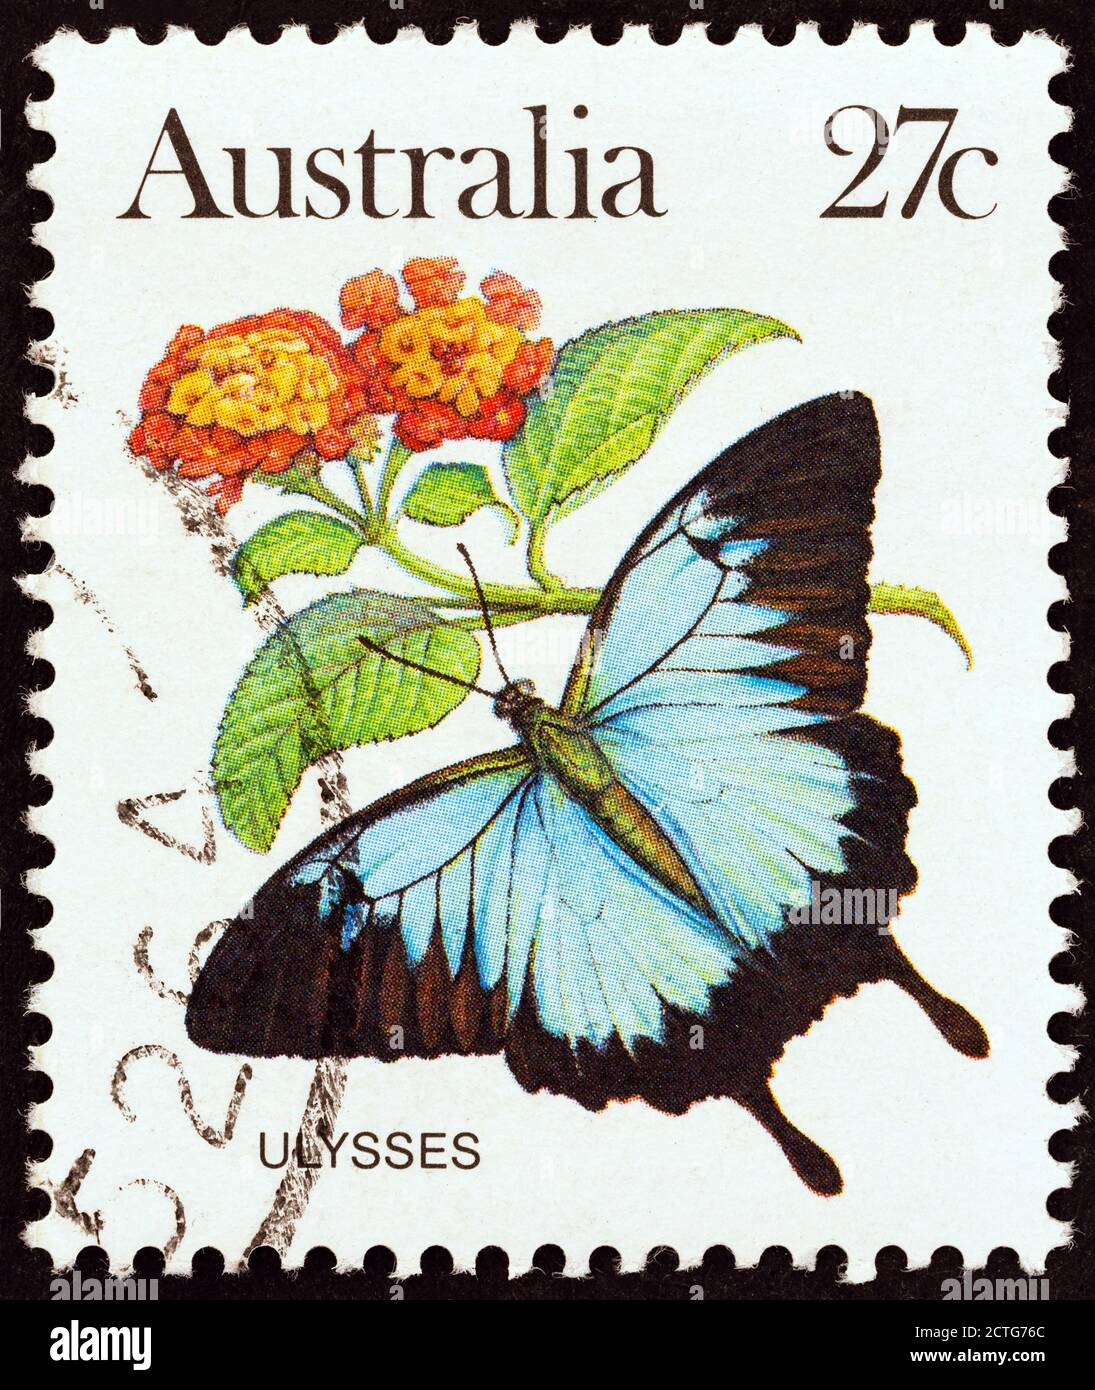 AUSTRALIEN - UM 1981: Eine in Australien gedruckte Briefmarke zeigt einen Papilio Ulysses Schmetterling, um 1981. Stockfoto